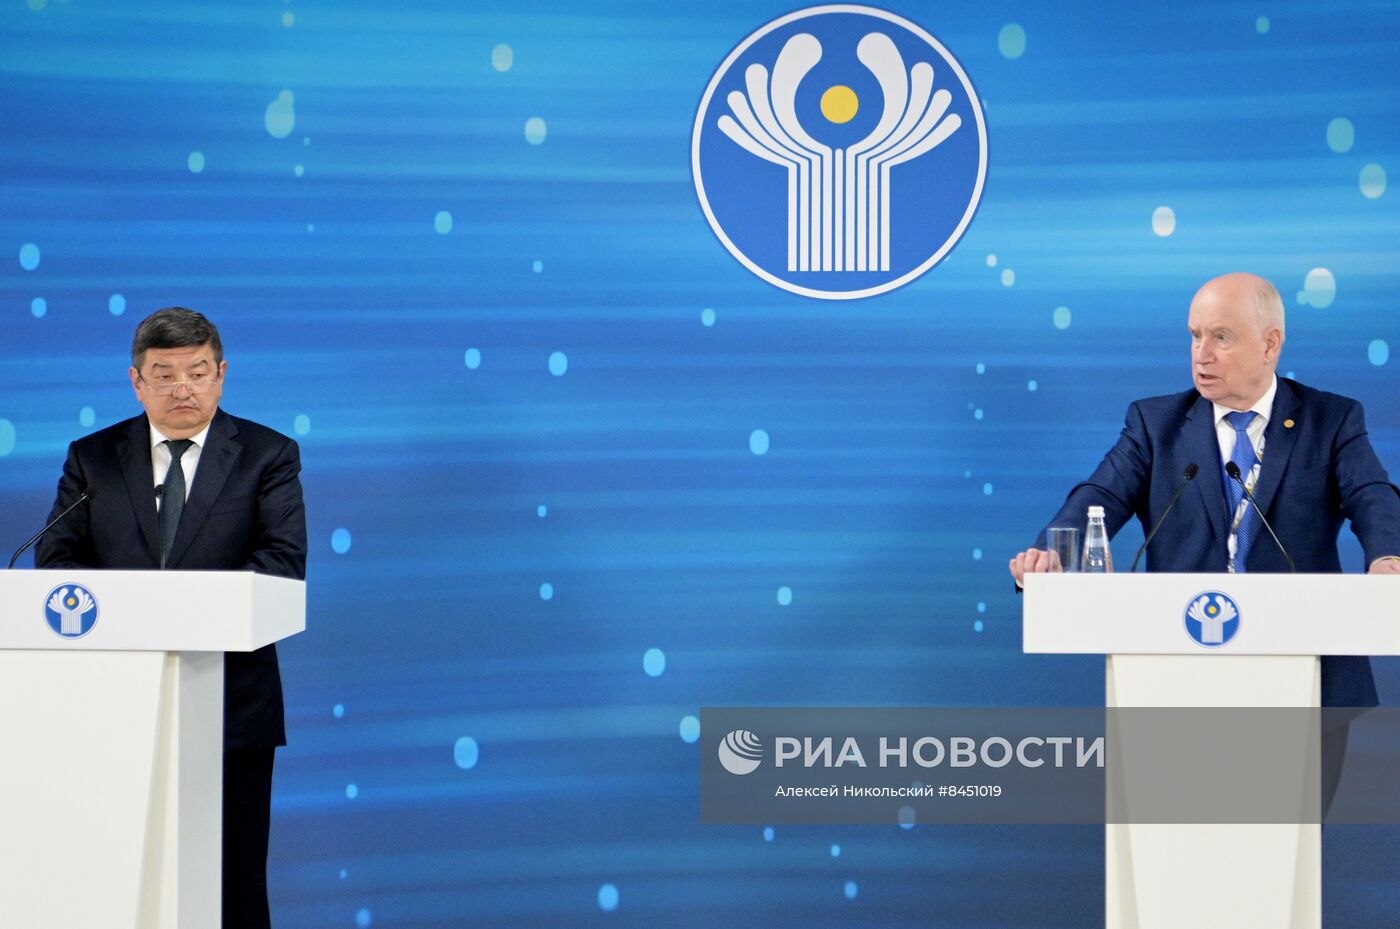 Заявления для прессы А. Жапарова и С. Лебедева по итогам заседания Совета глав правительств Содружества Независимых Государств в расширенном составе